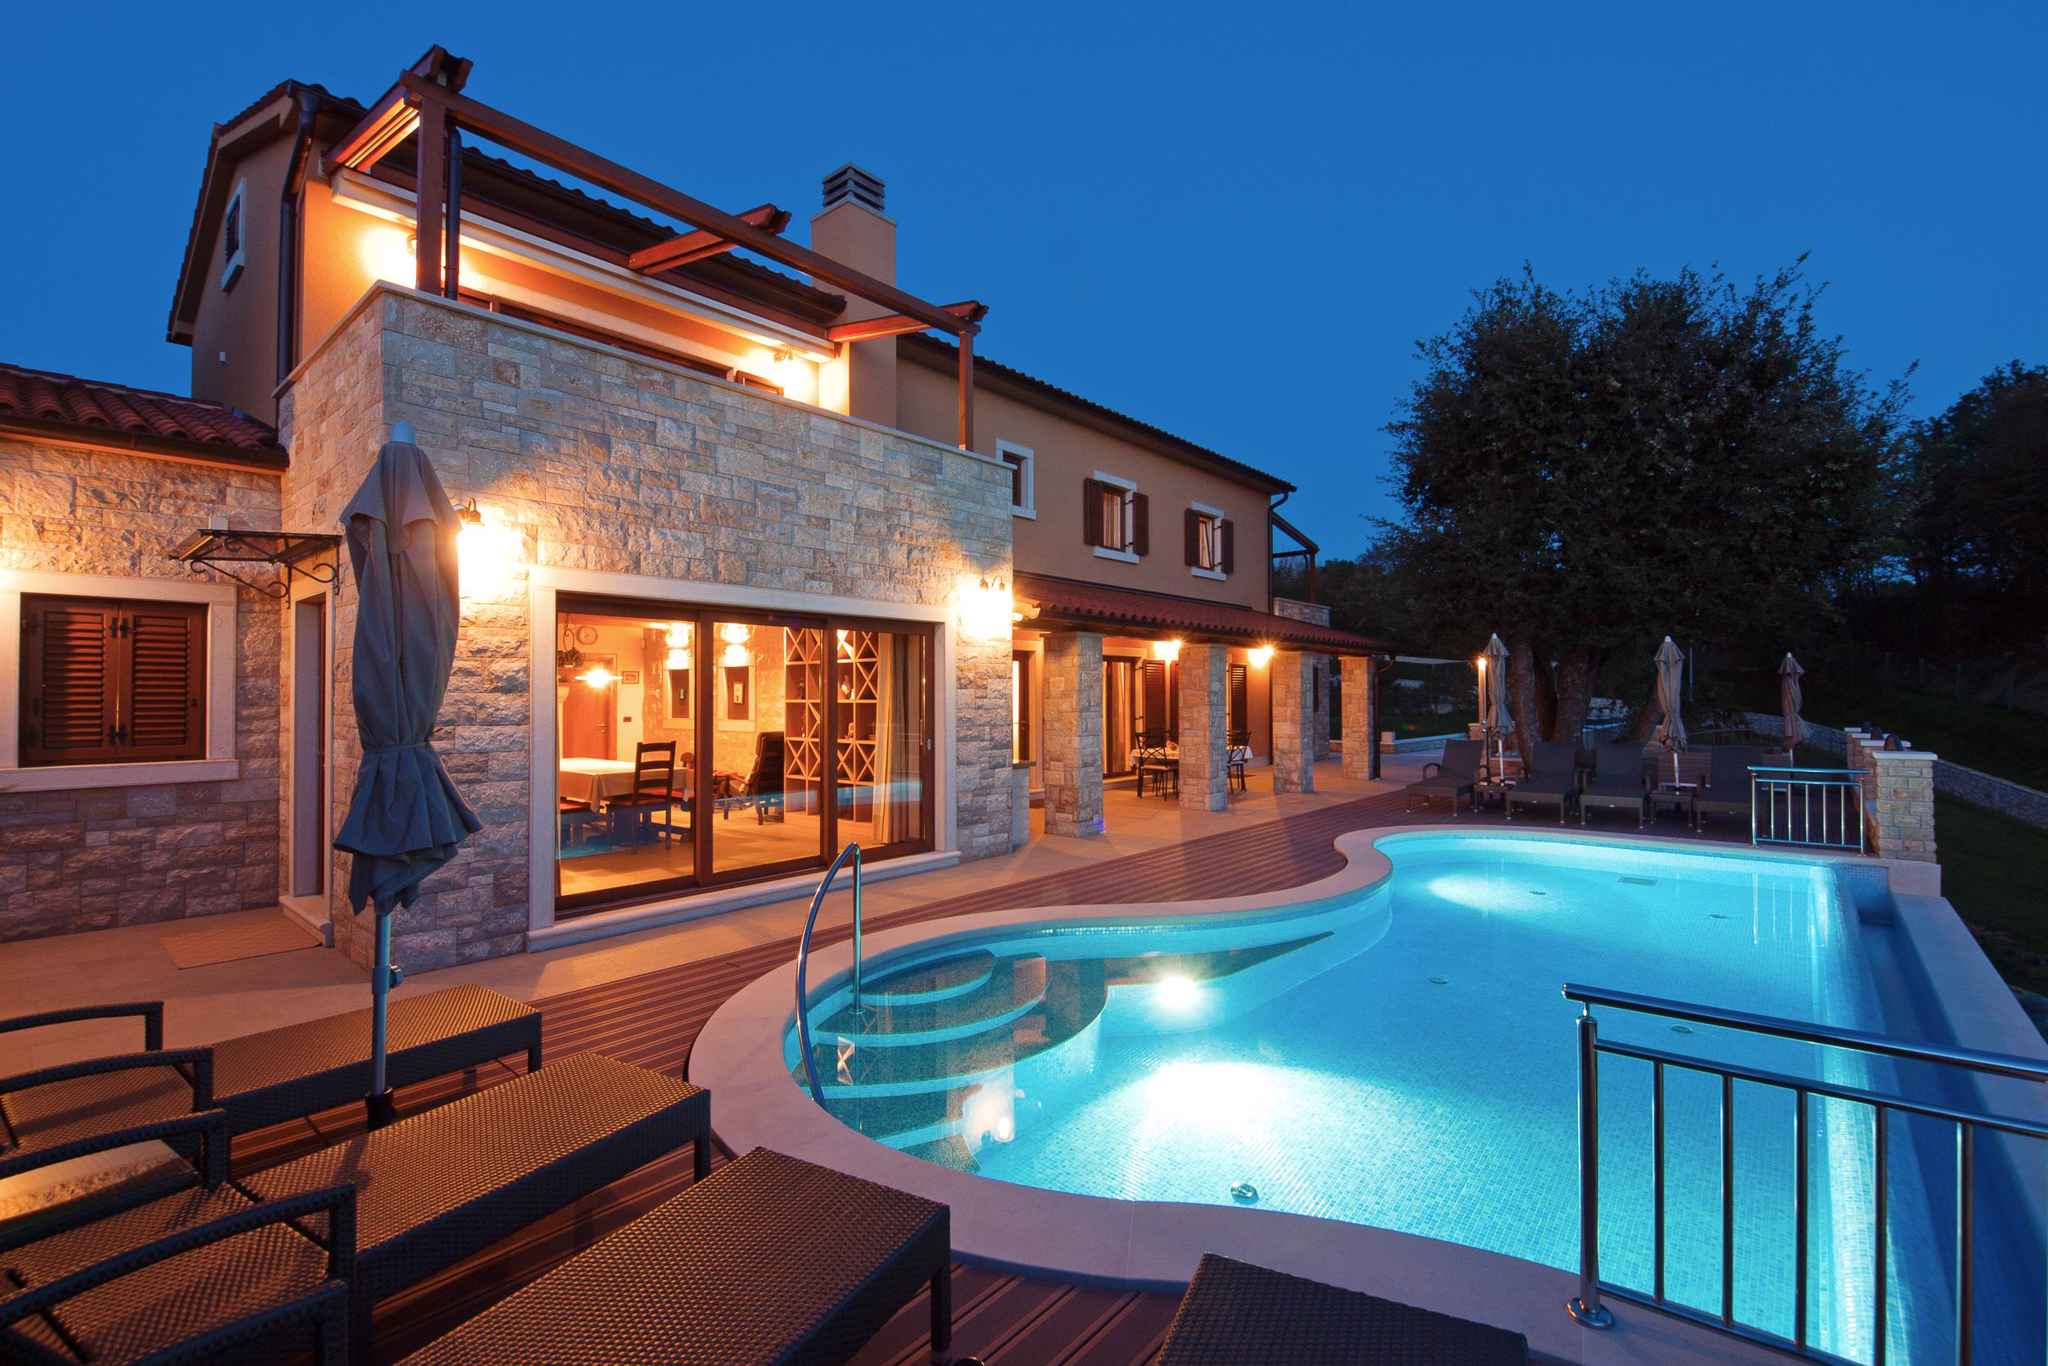 Villa mit Pool und Minigolf Ferienhaus in Kroatien